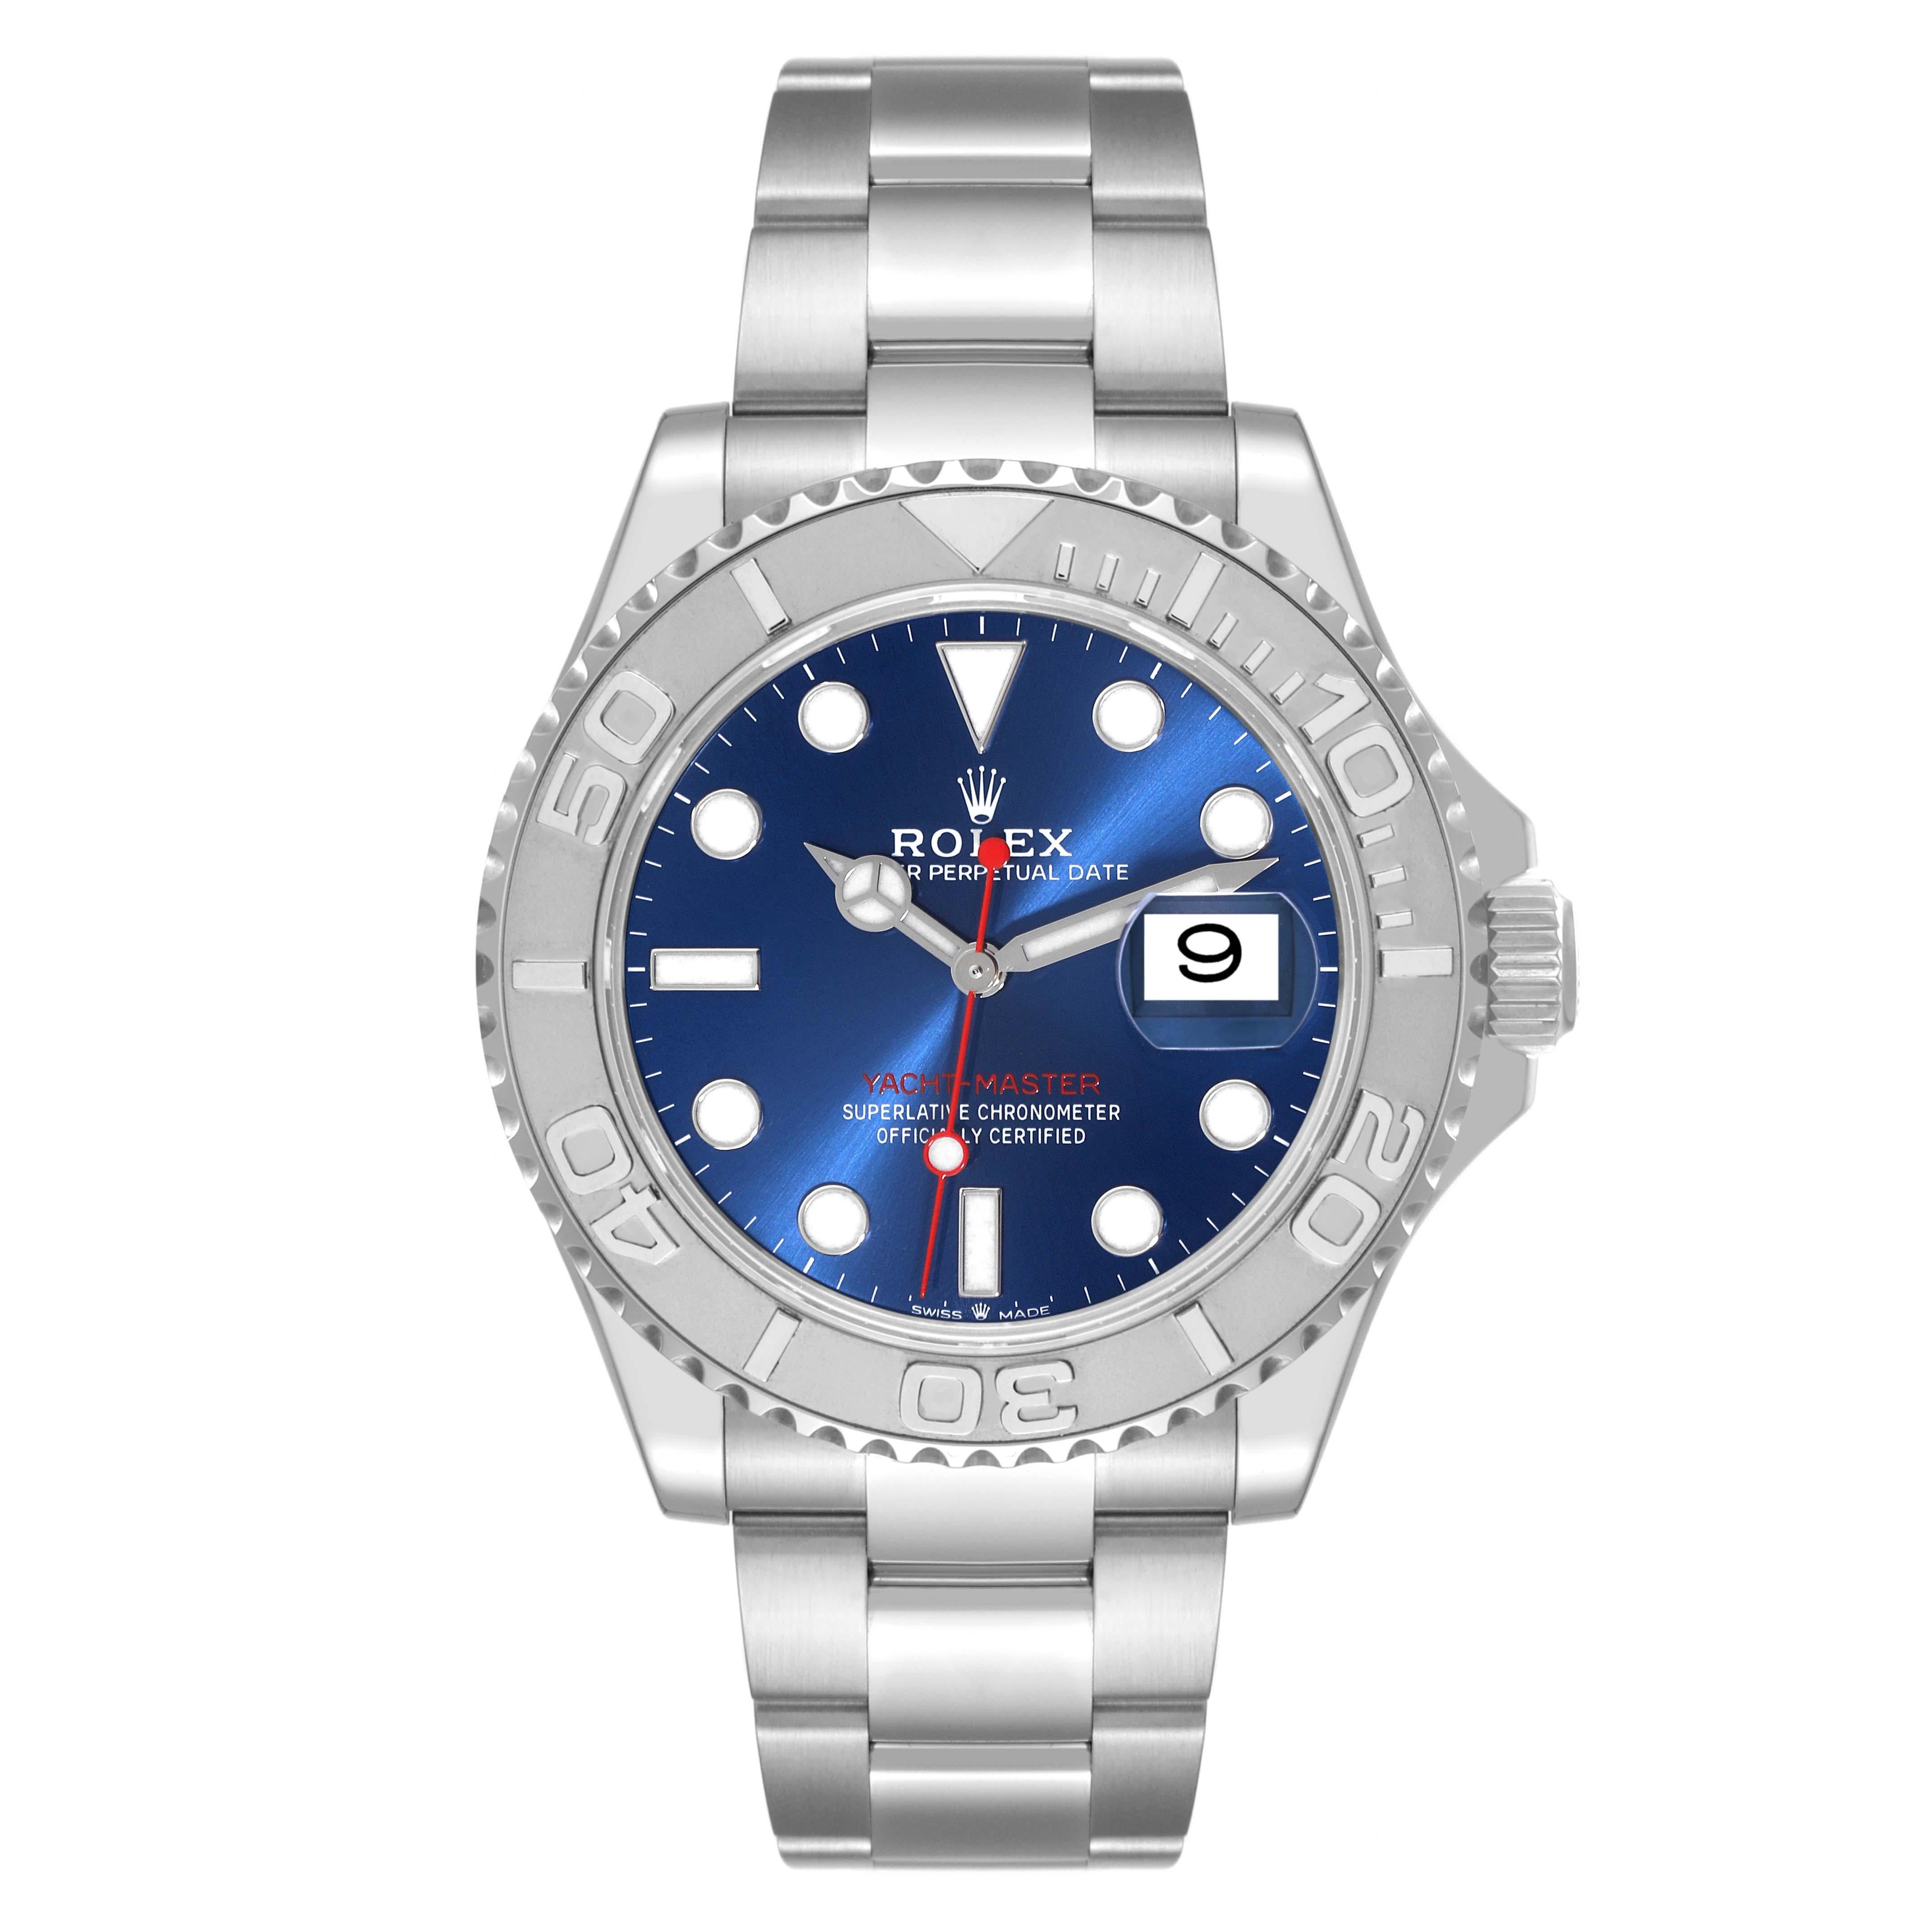 Rolex Yachtmaster Steel Platinum Blue Dial Mens Watch 126622 Box Card. Mouvement automatique à remontage automatique, officiellement certifié chronomètre. Boîtier en acier inoxydable de 40.0 mm de diamètre. Logo Rolex sur la couronne. Lunette